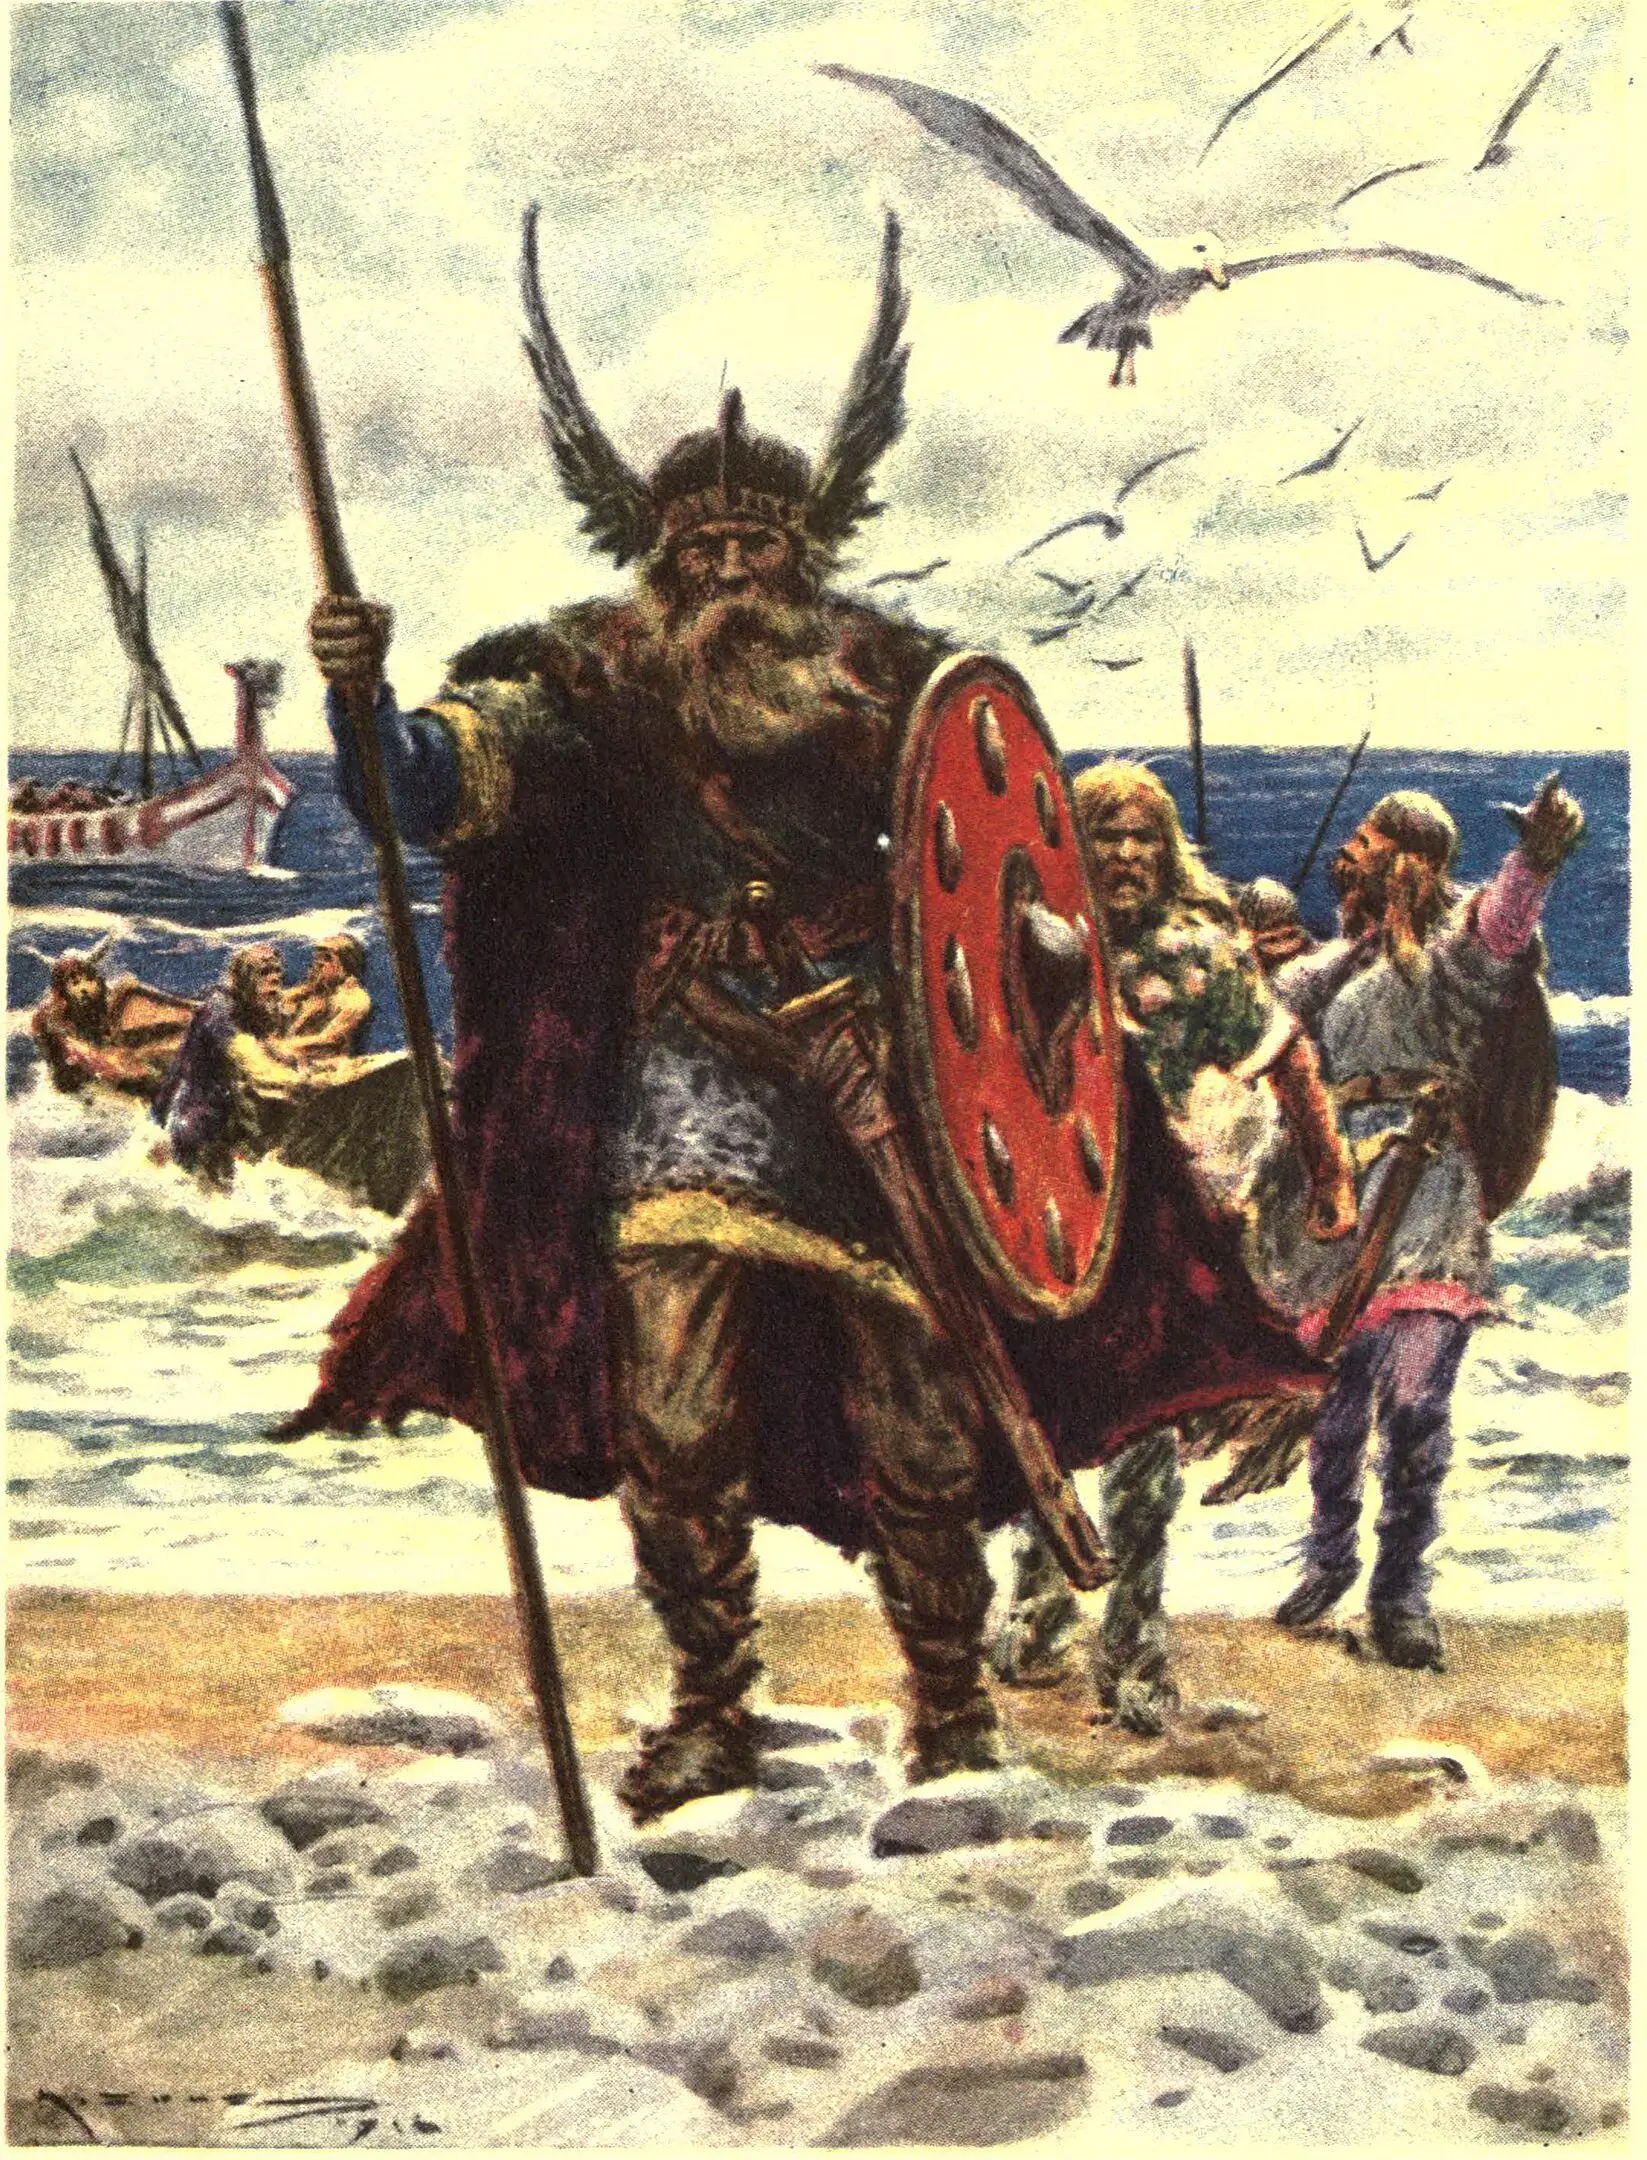 Los vikingos, los colonizadores de Groenlandia